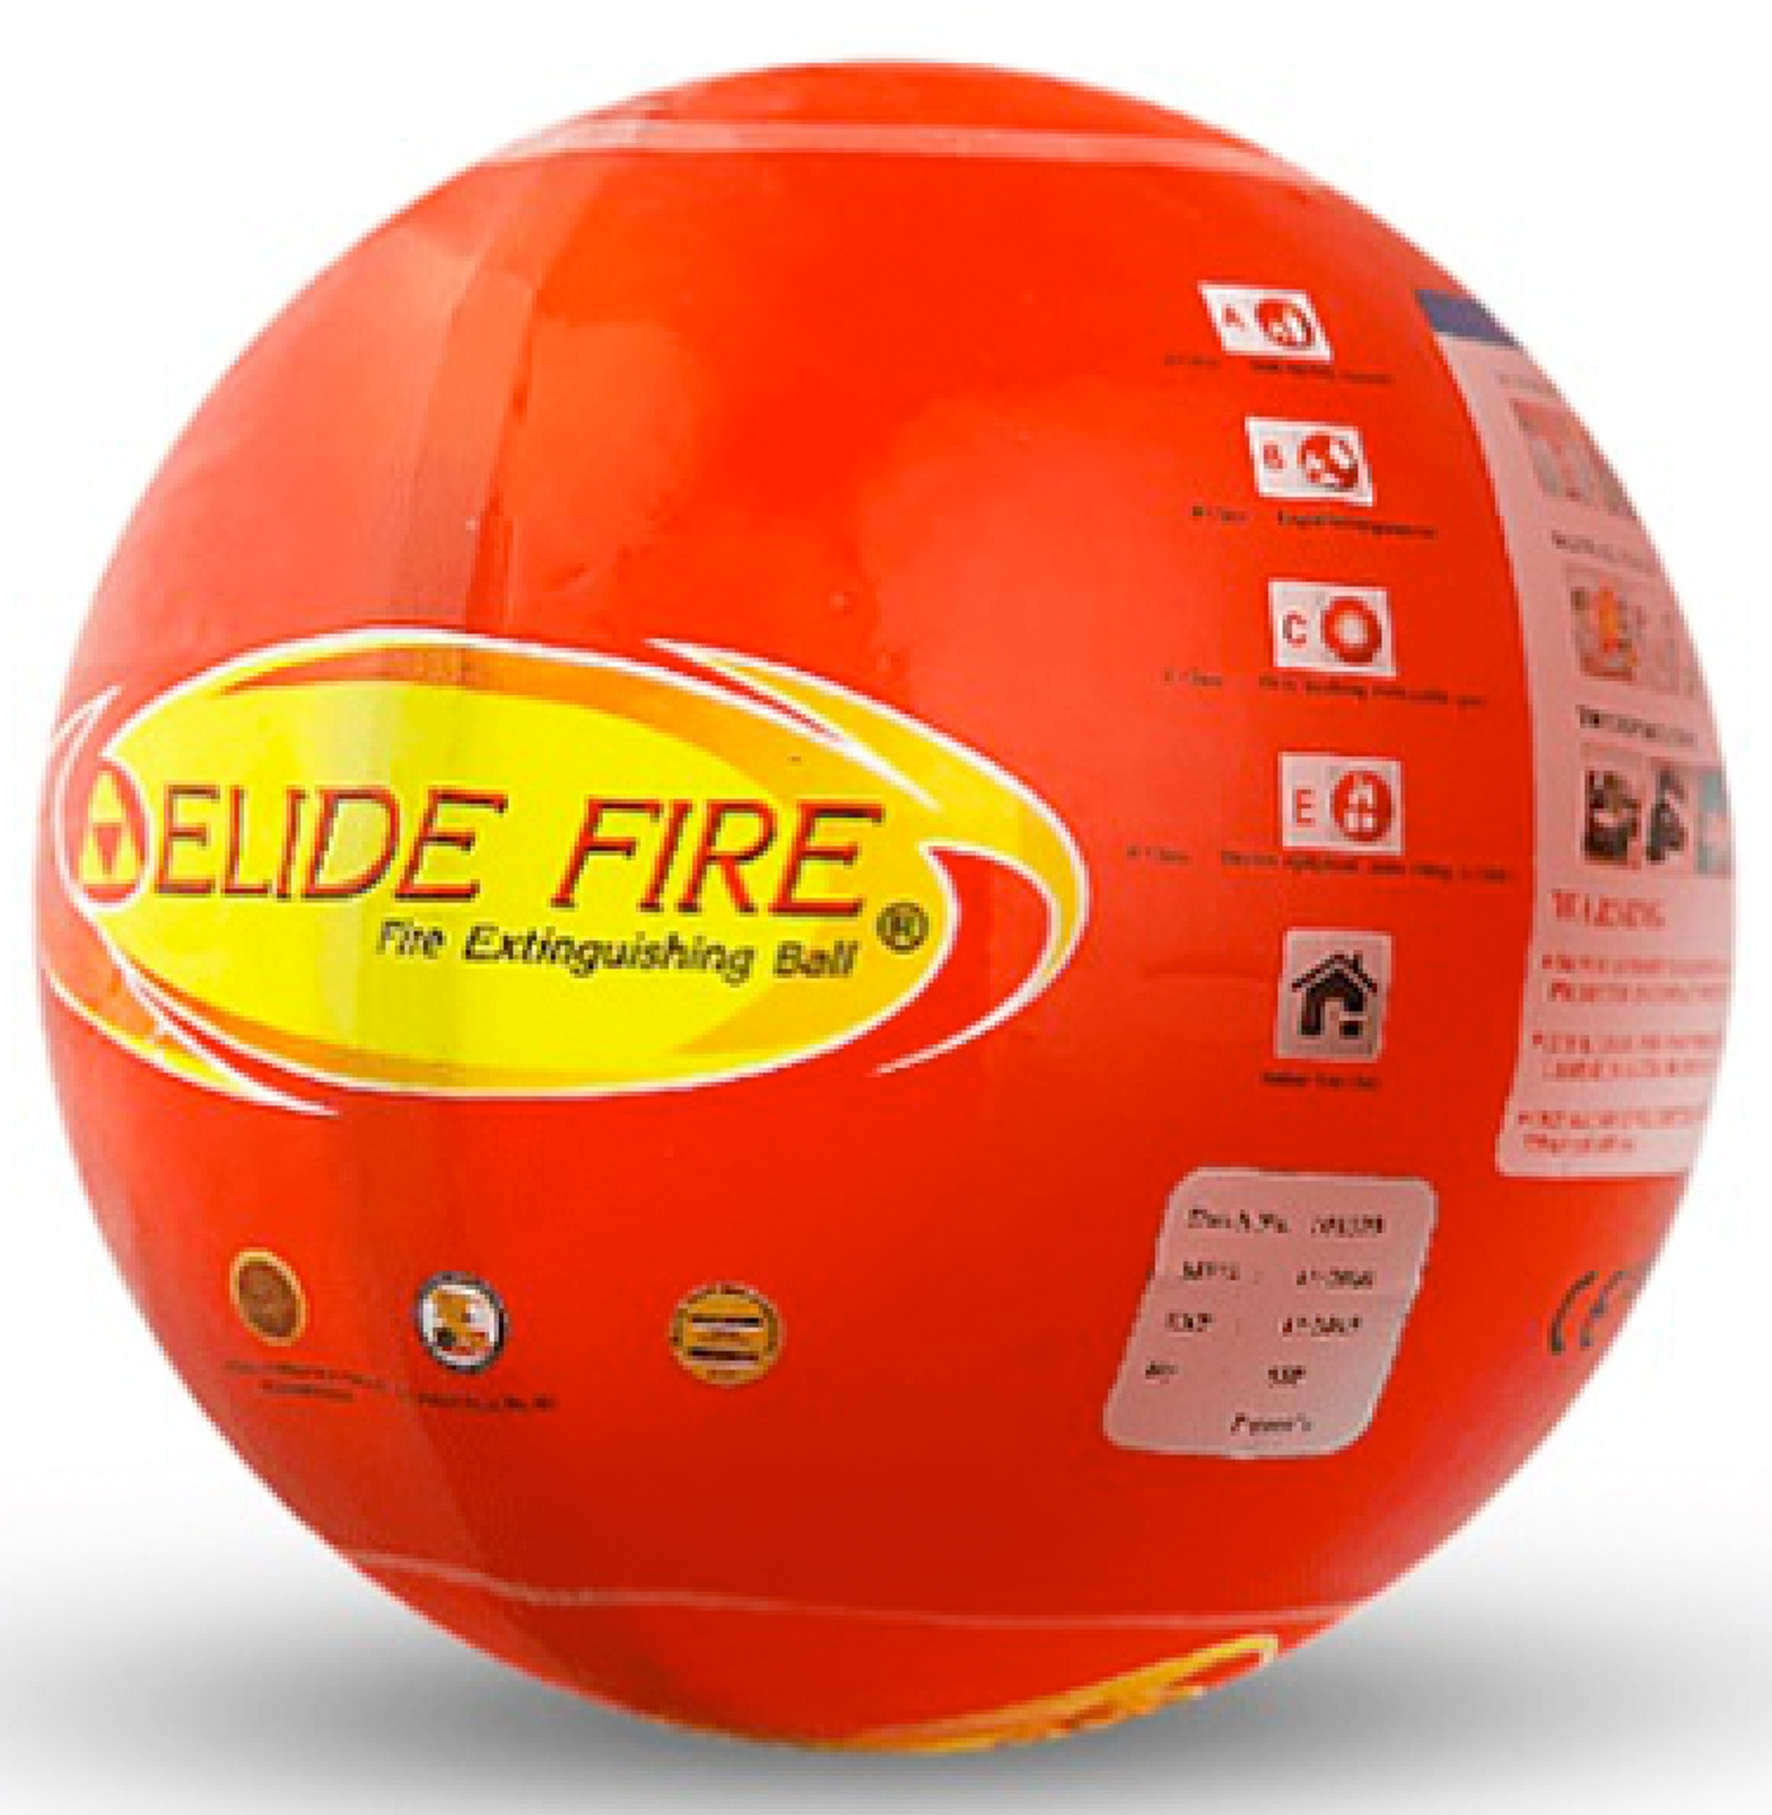 De Elide Fire Ball kan je ook gewoon in het vuur gooien. De vuurbal activeert dan na drie seconden om het vuur te doven. (Foto Elide fire)